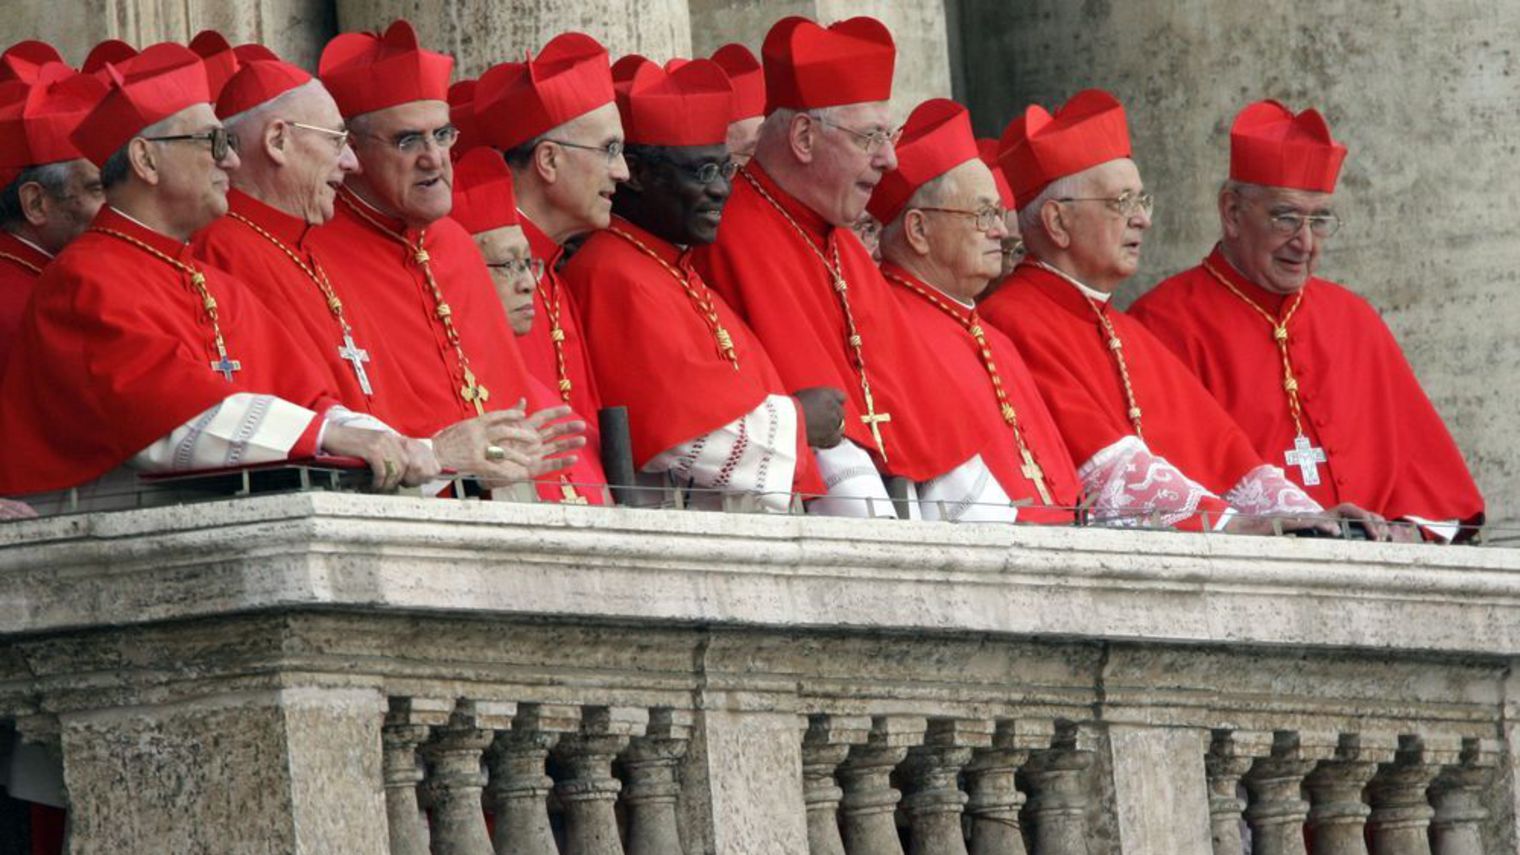 5 nouveaux cardinaux ont été annoncés par le Pape François